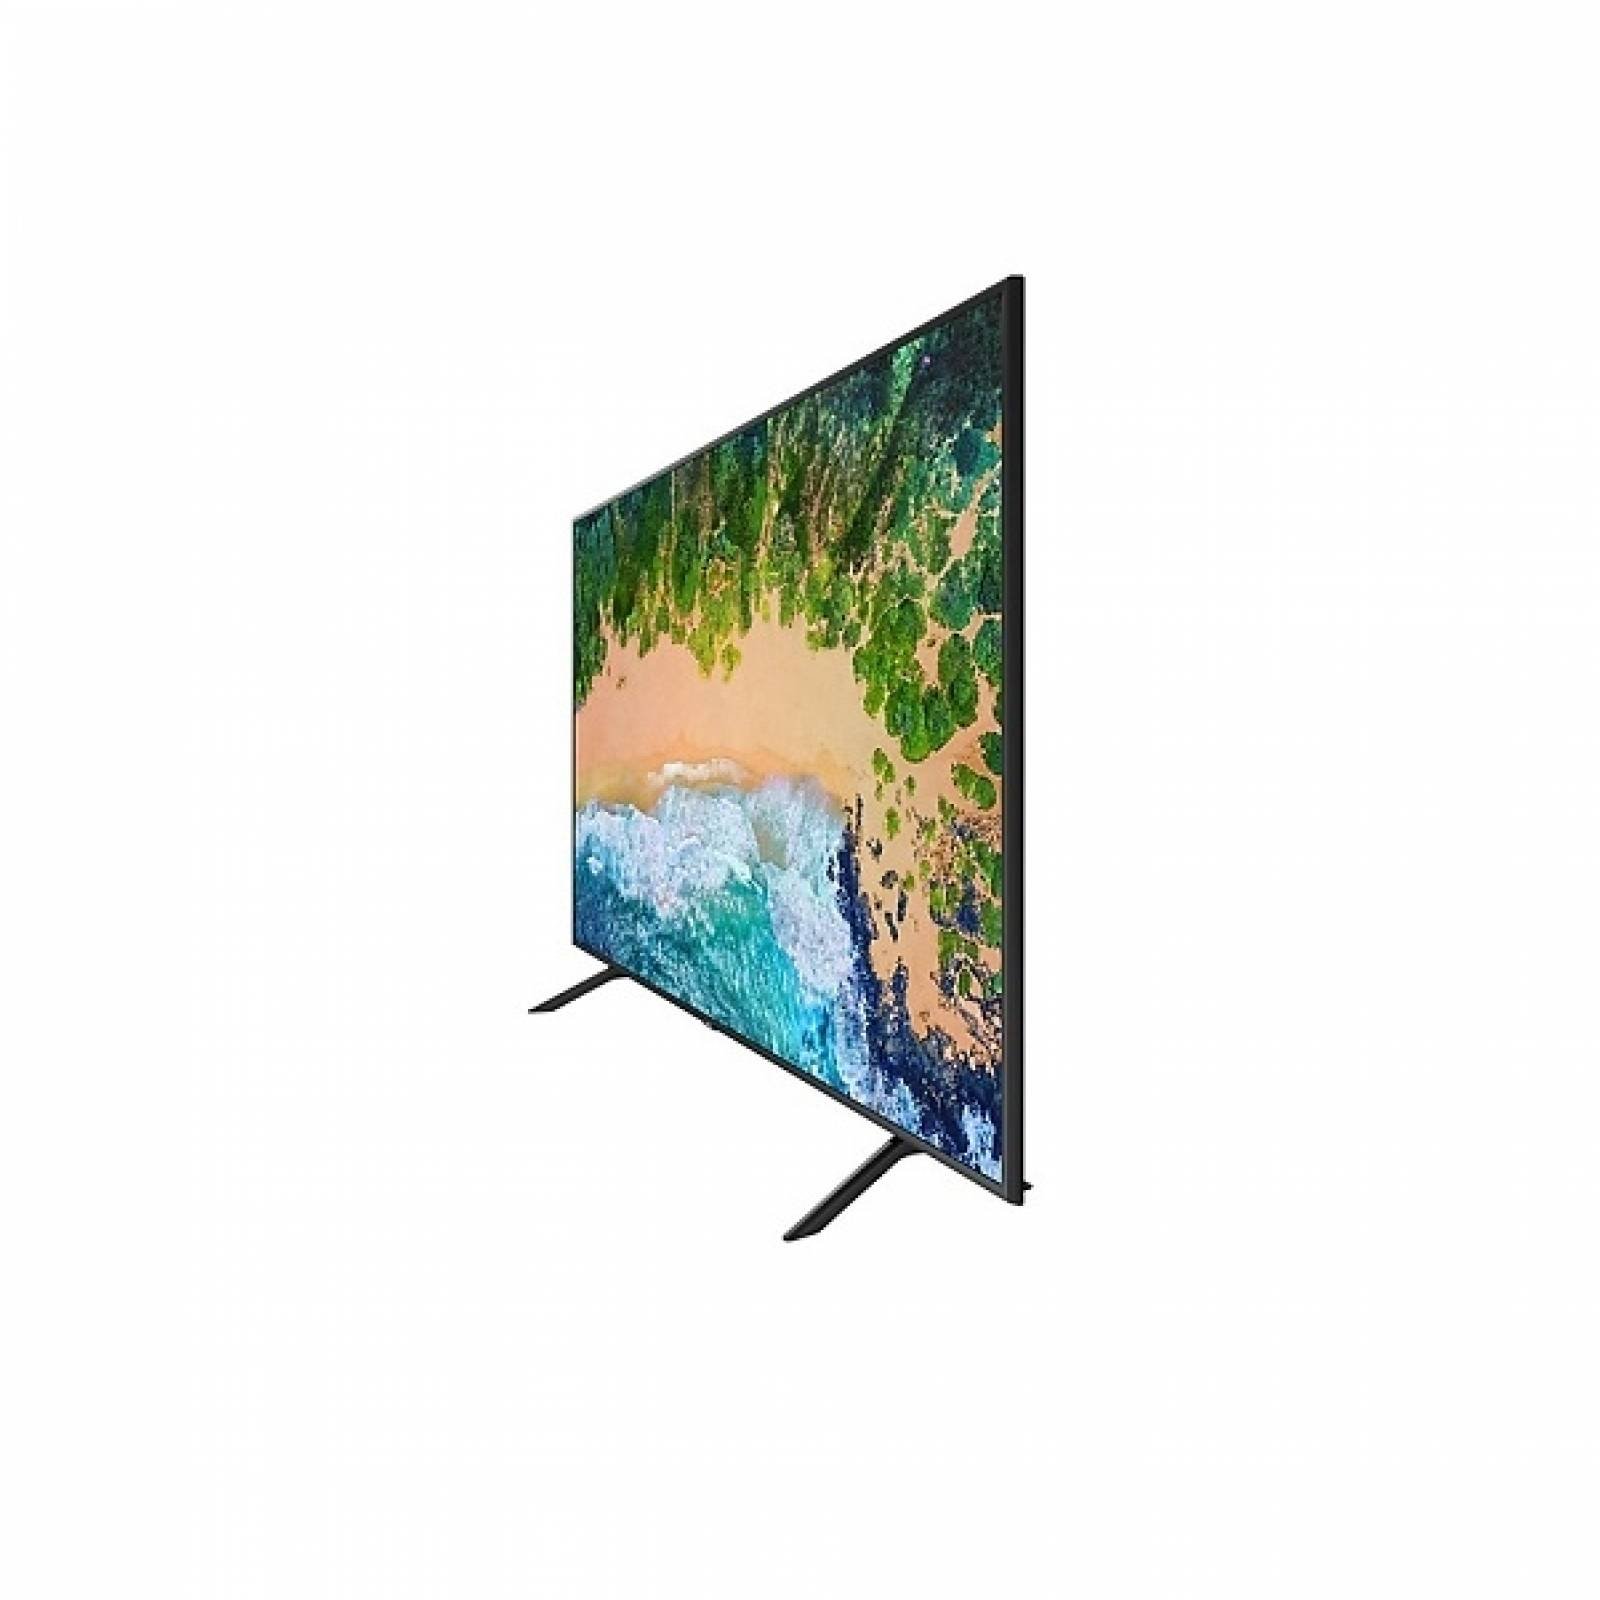 Smart TV Samsung 58 LED 4K HDR PurColor UN58RU7100